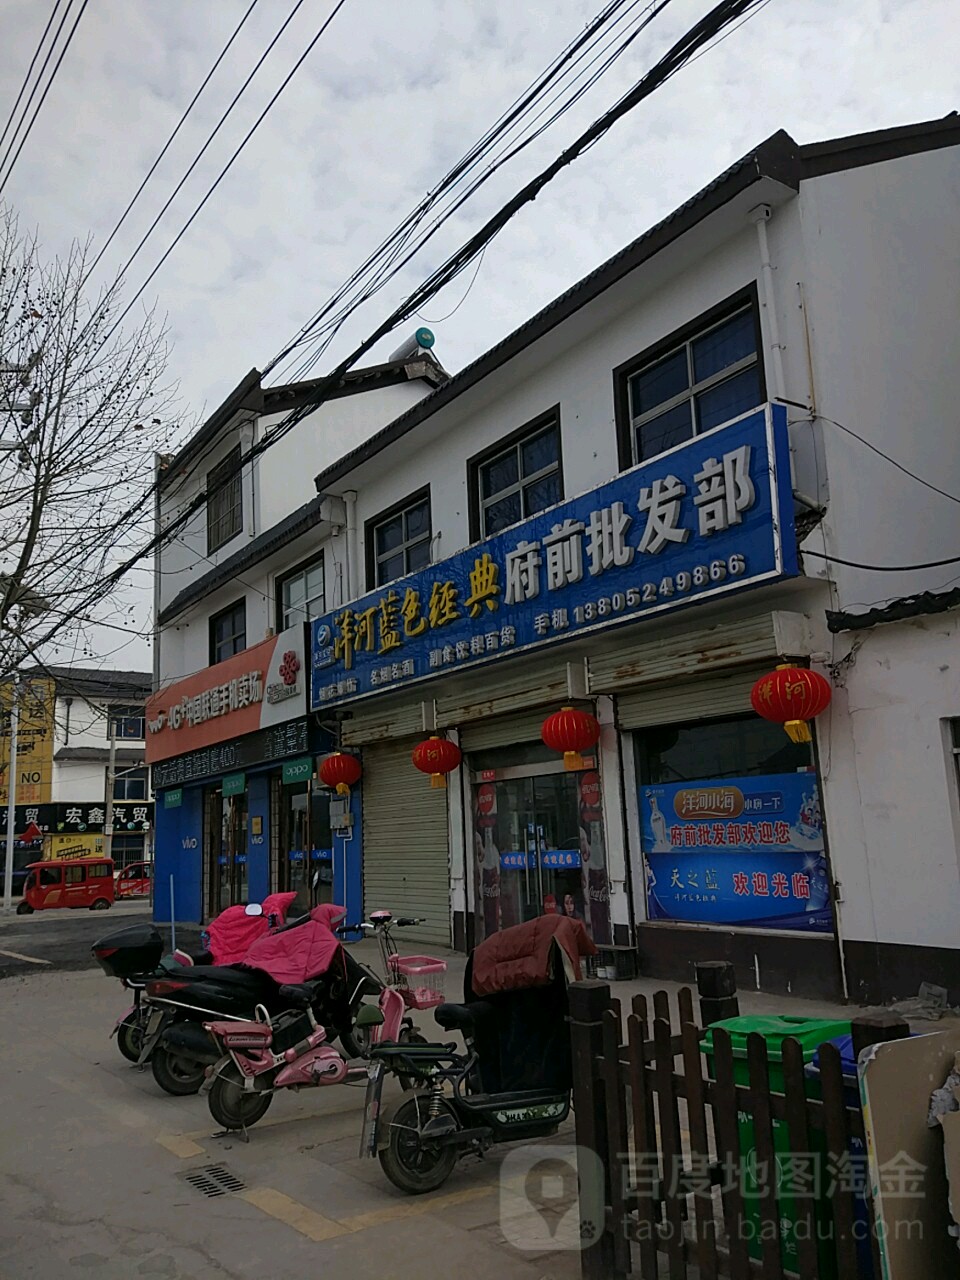 中國聯通沃手機賣場